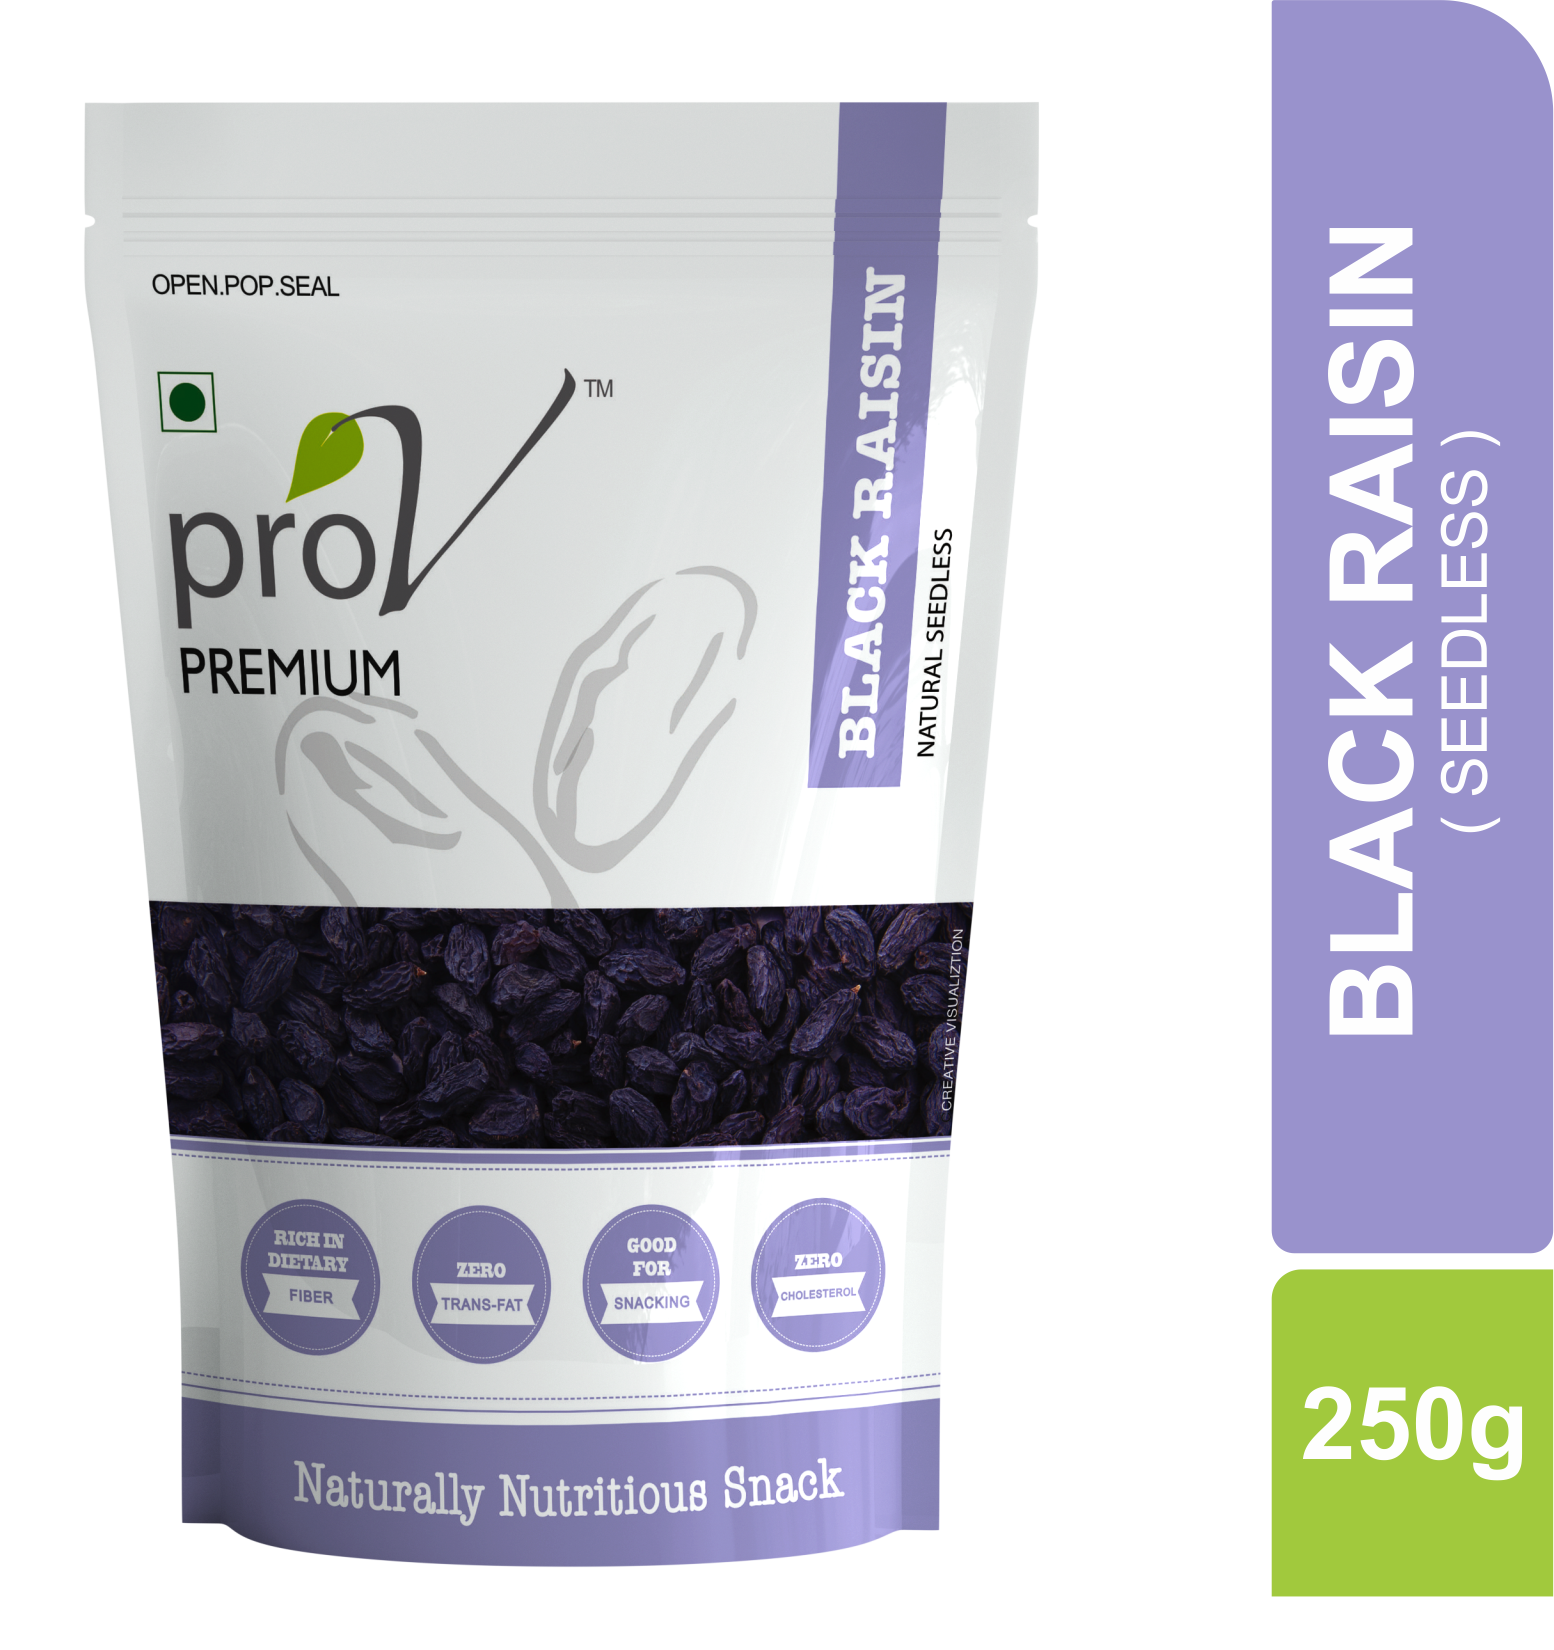 ProV Premium - Black Raisins 250g - Front3d.png